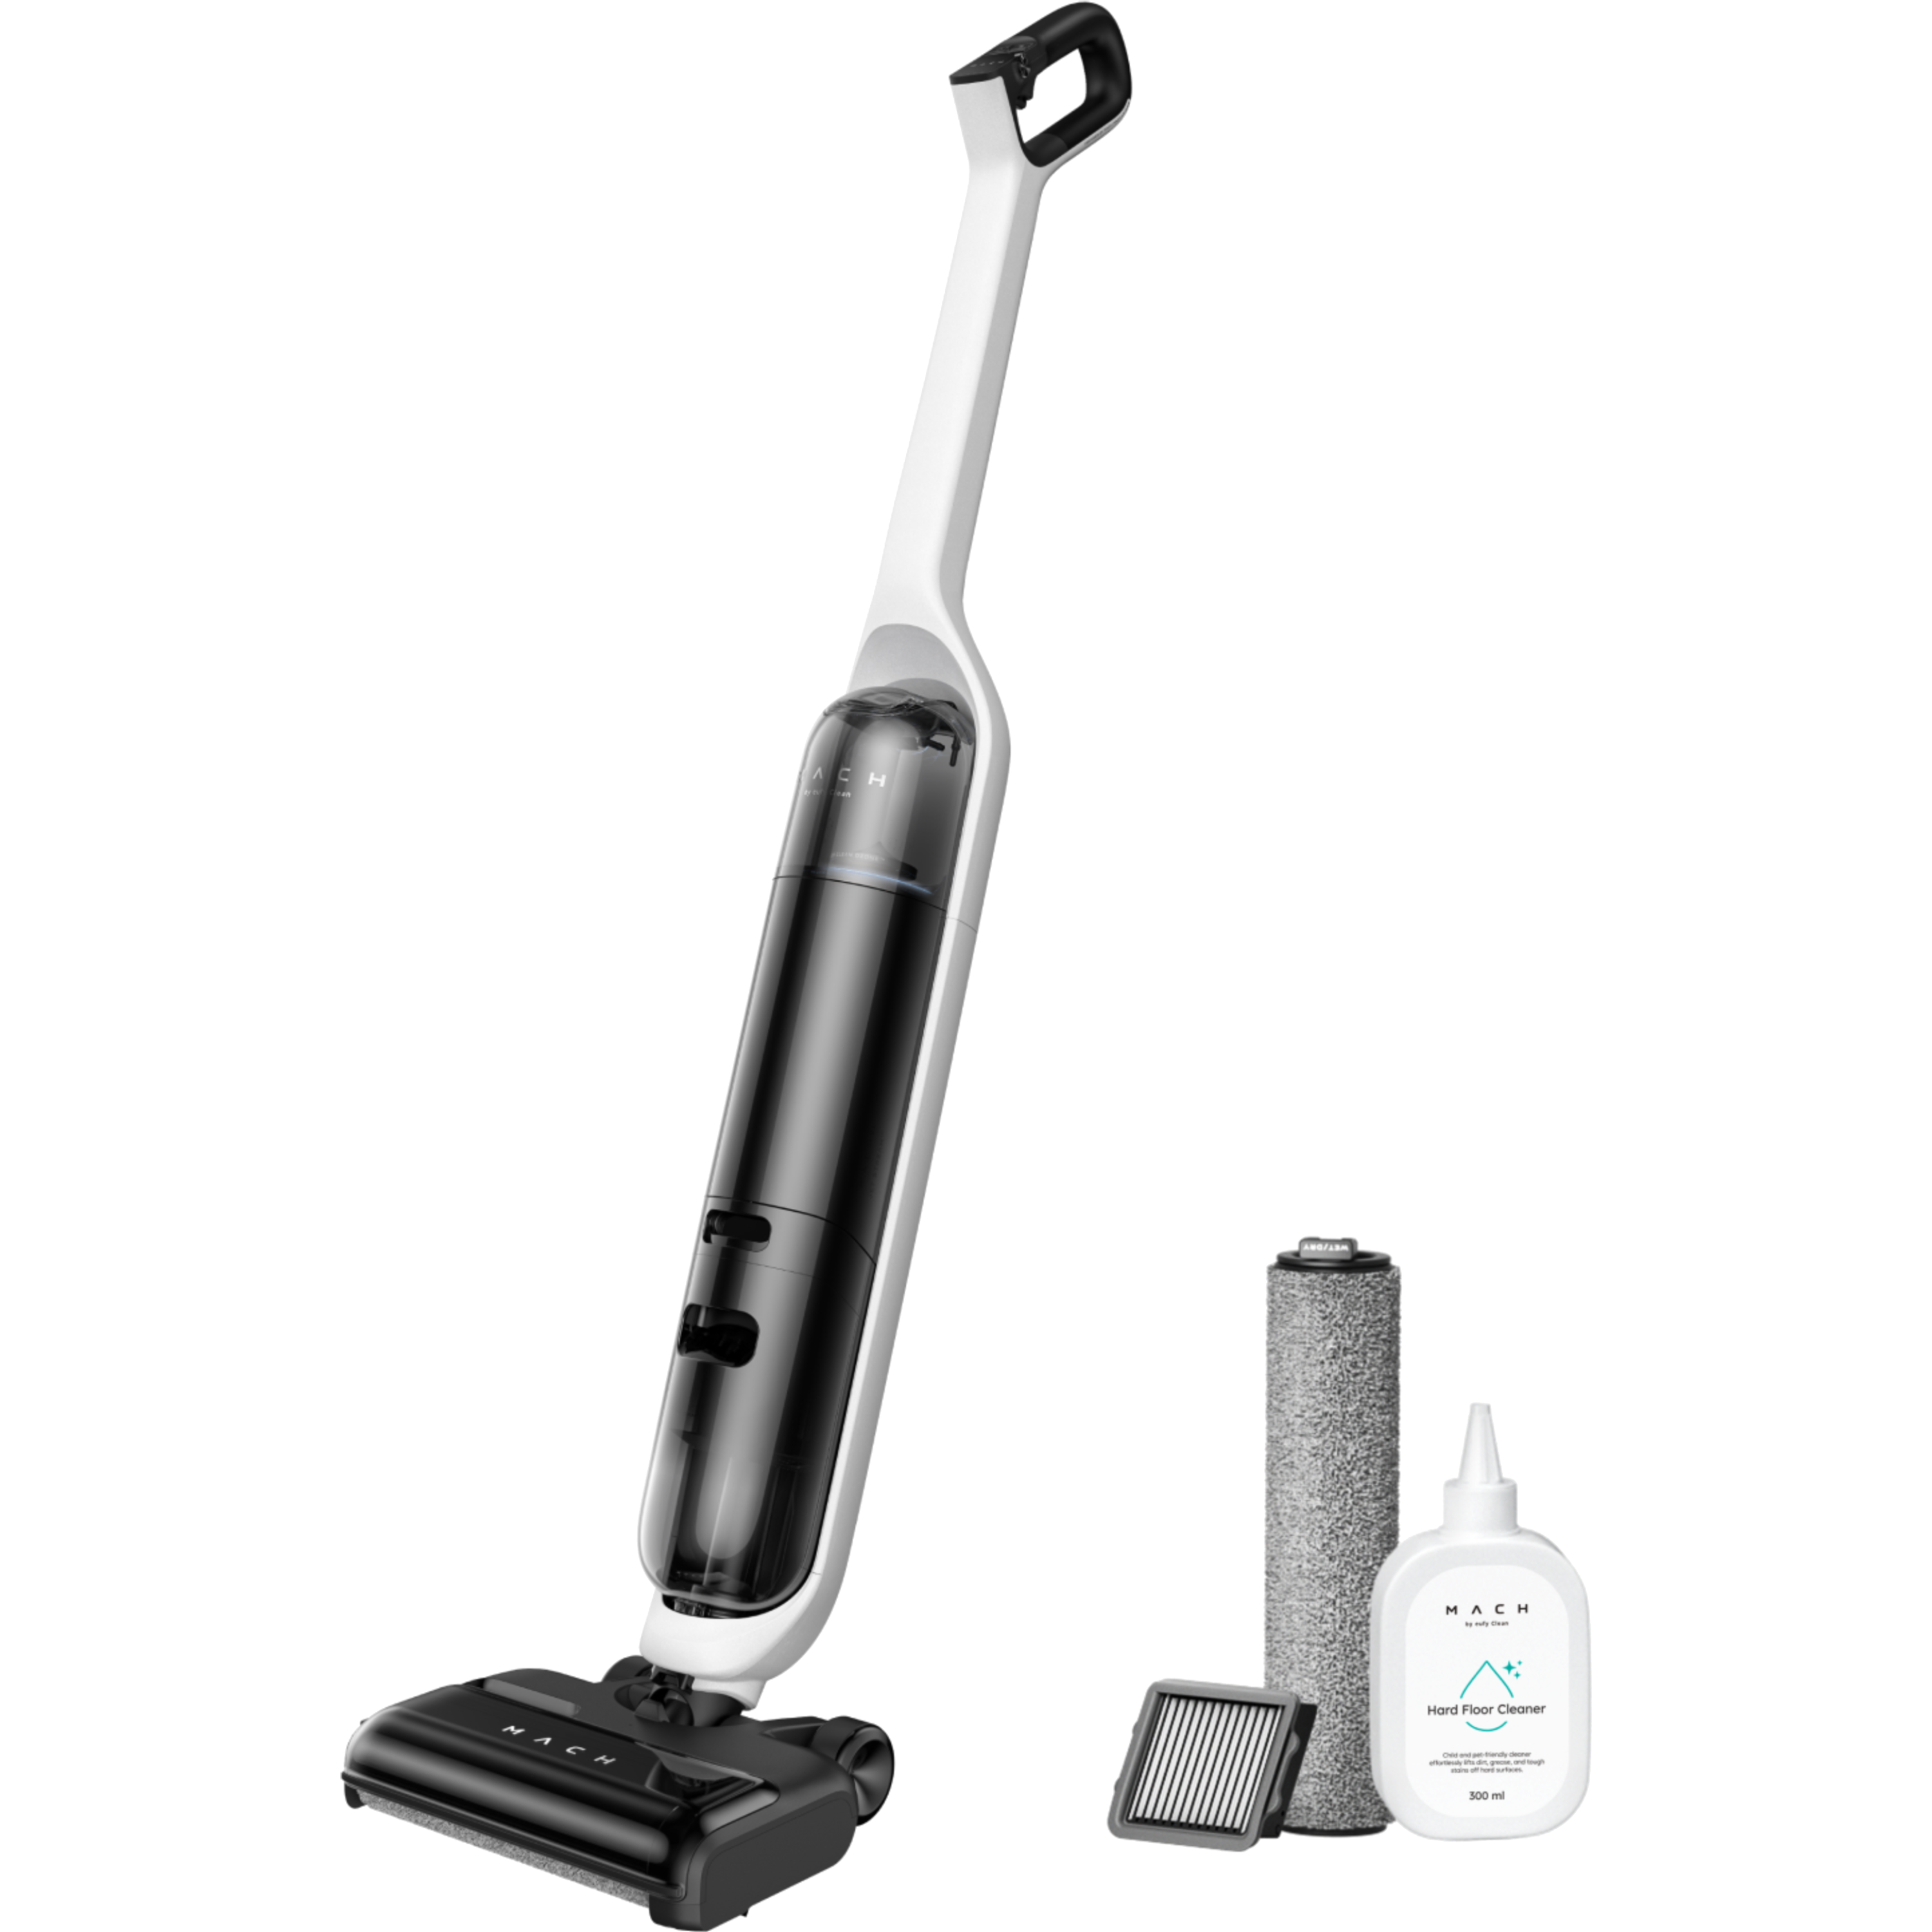 שואב אבק אלחוטי שוטף Anker Eufy Vacuum Cleaner Clean Mach V1 T275 - שנתיים אחריות ע